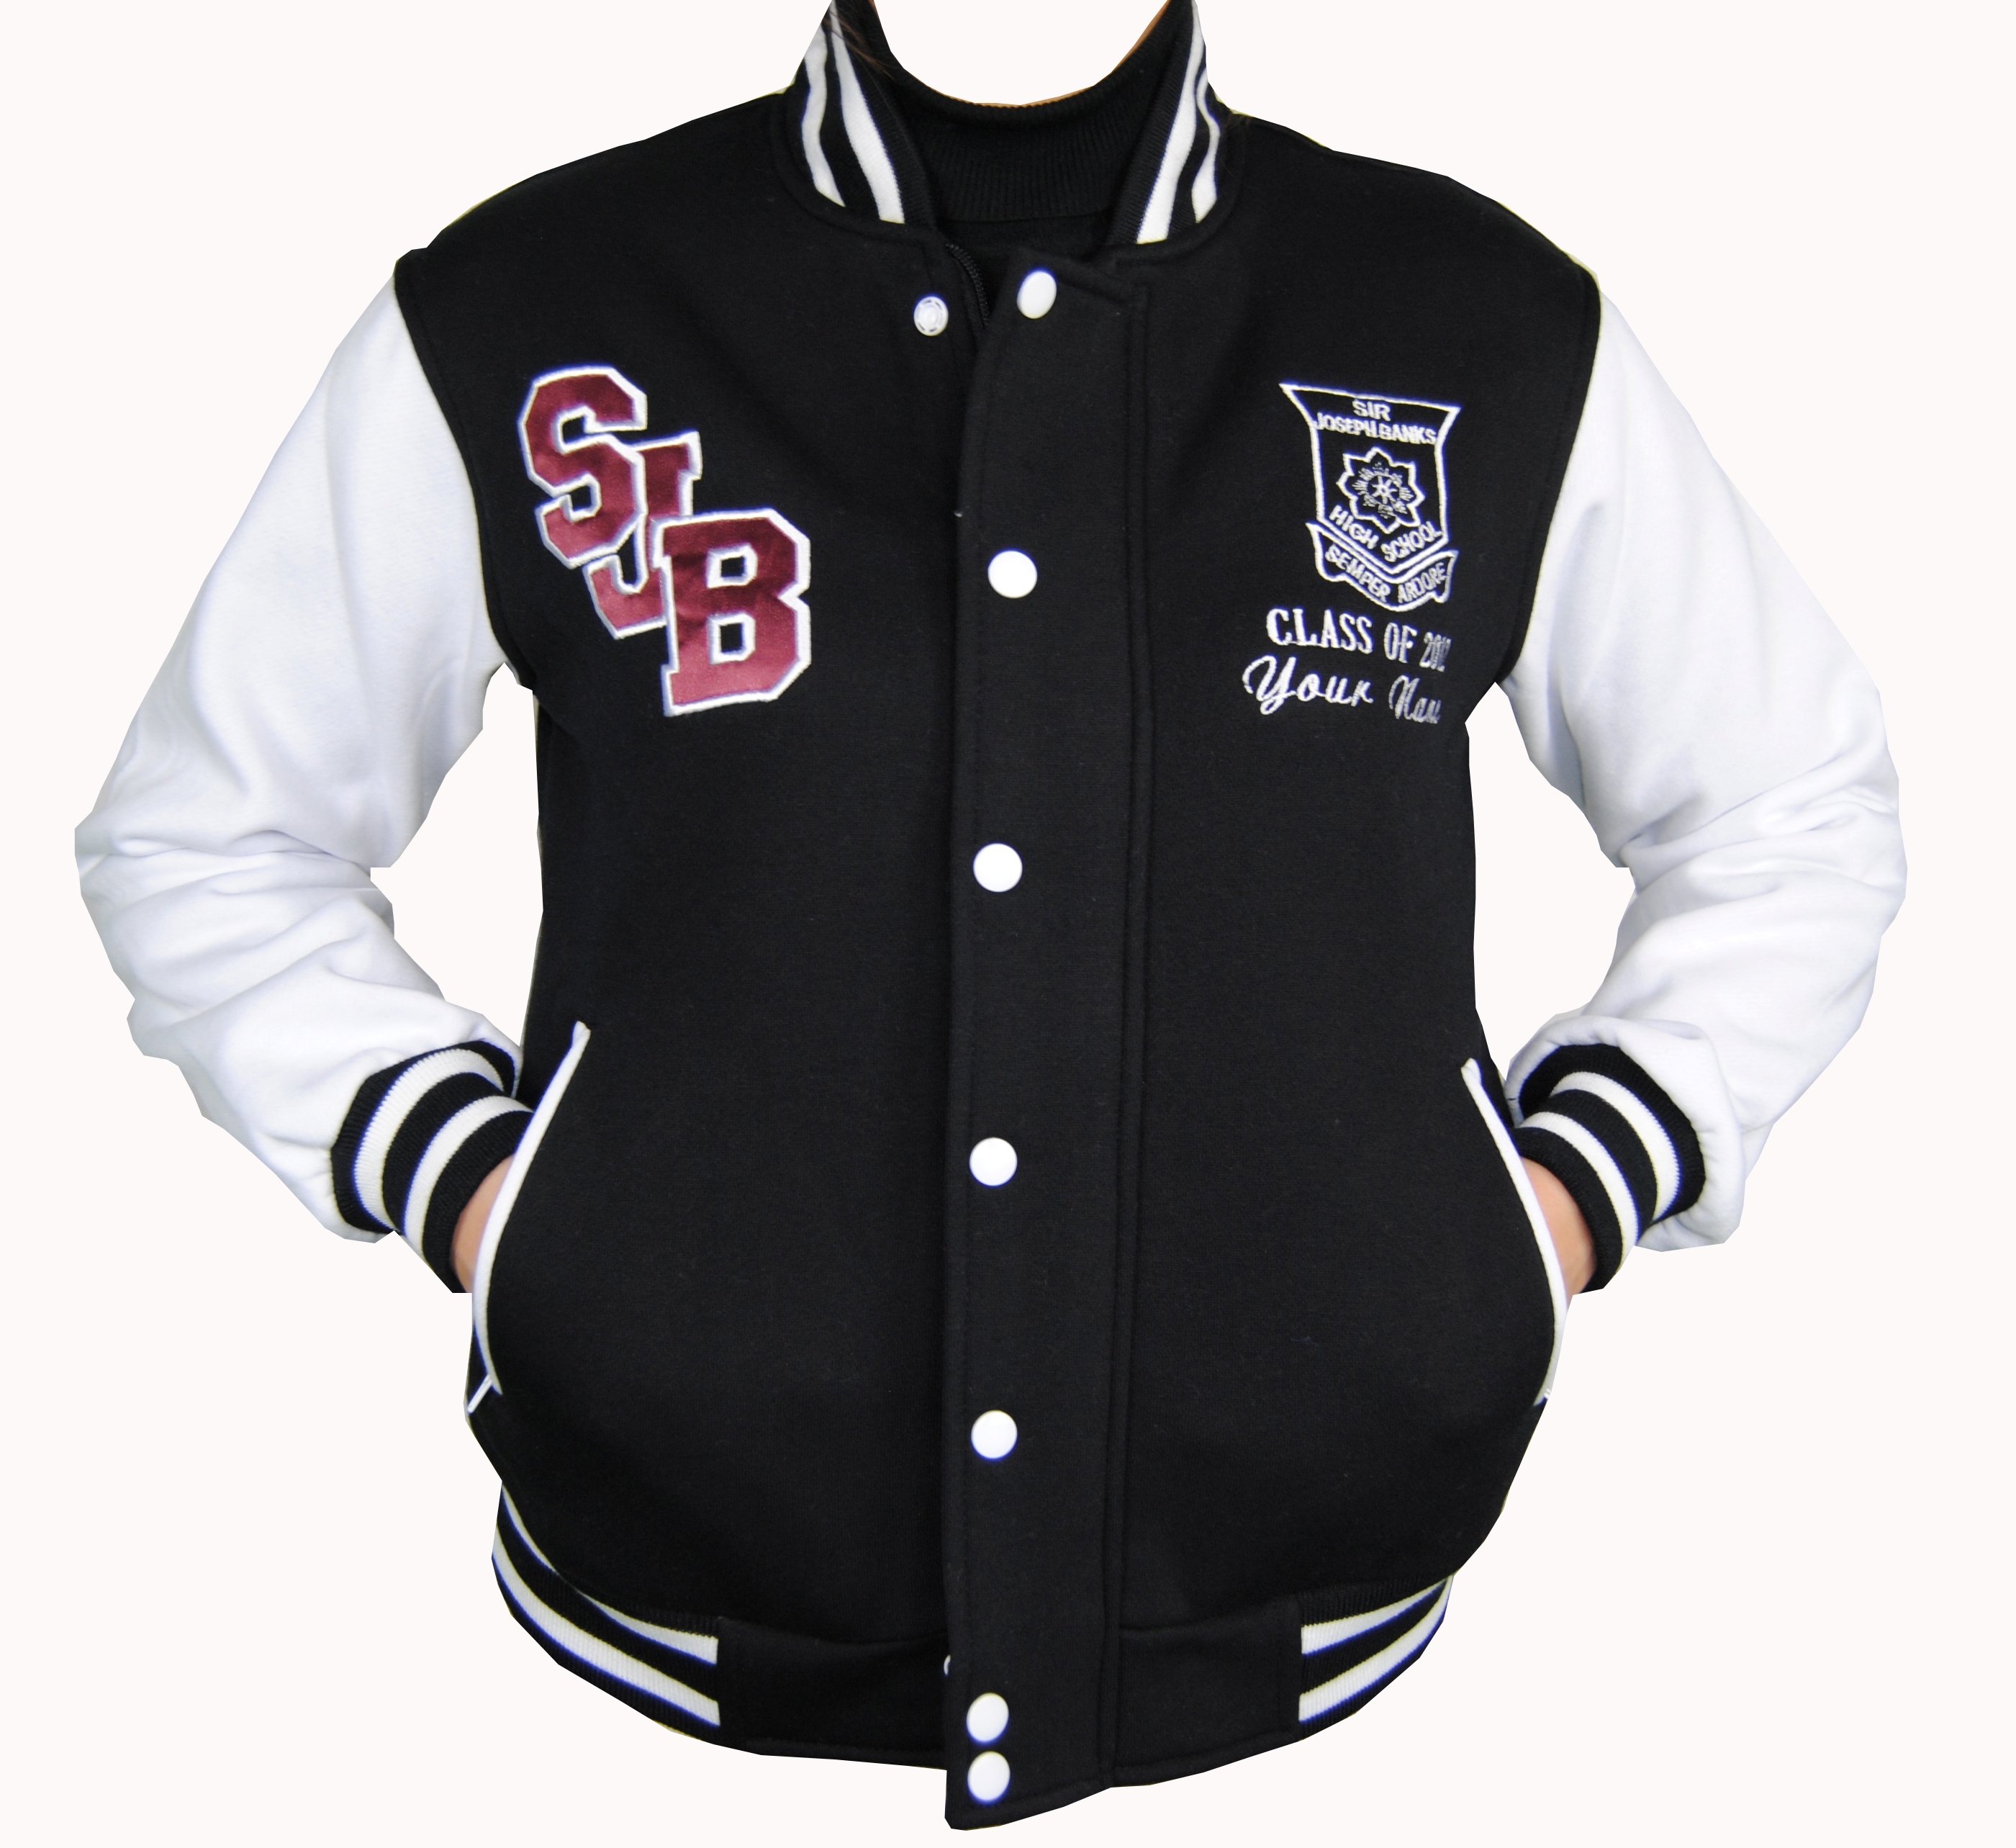 Мир бомберов. Куртка Varsity Jacket бейсбольная. Бейсбольная куртка Langzi Cheng. Russell Athletic бейсбольная куртка. Куртка Varsity Jacket бейсбольная Узбекистан.